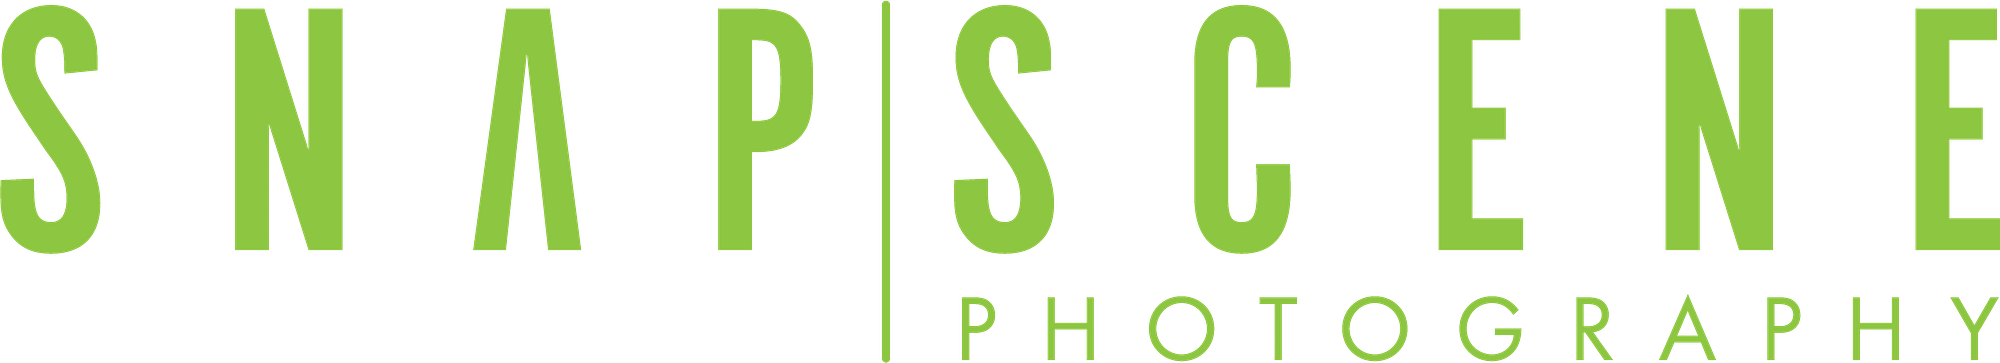 Green Snapscene Photography Logo header and branding